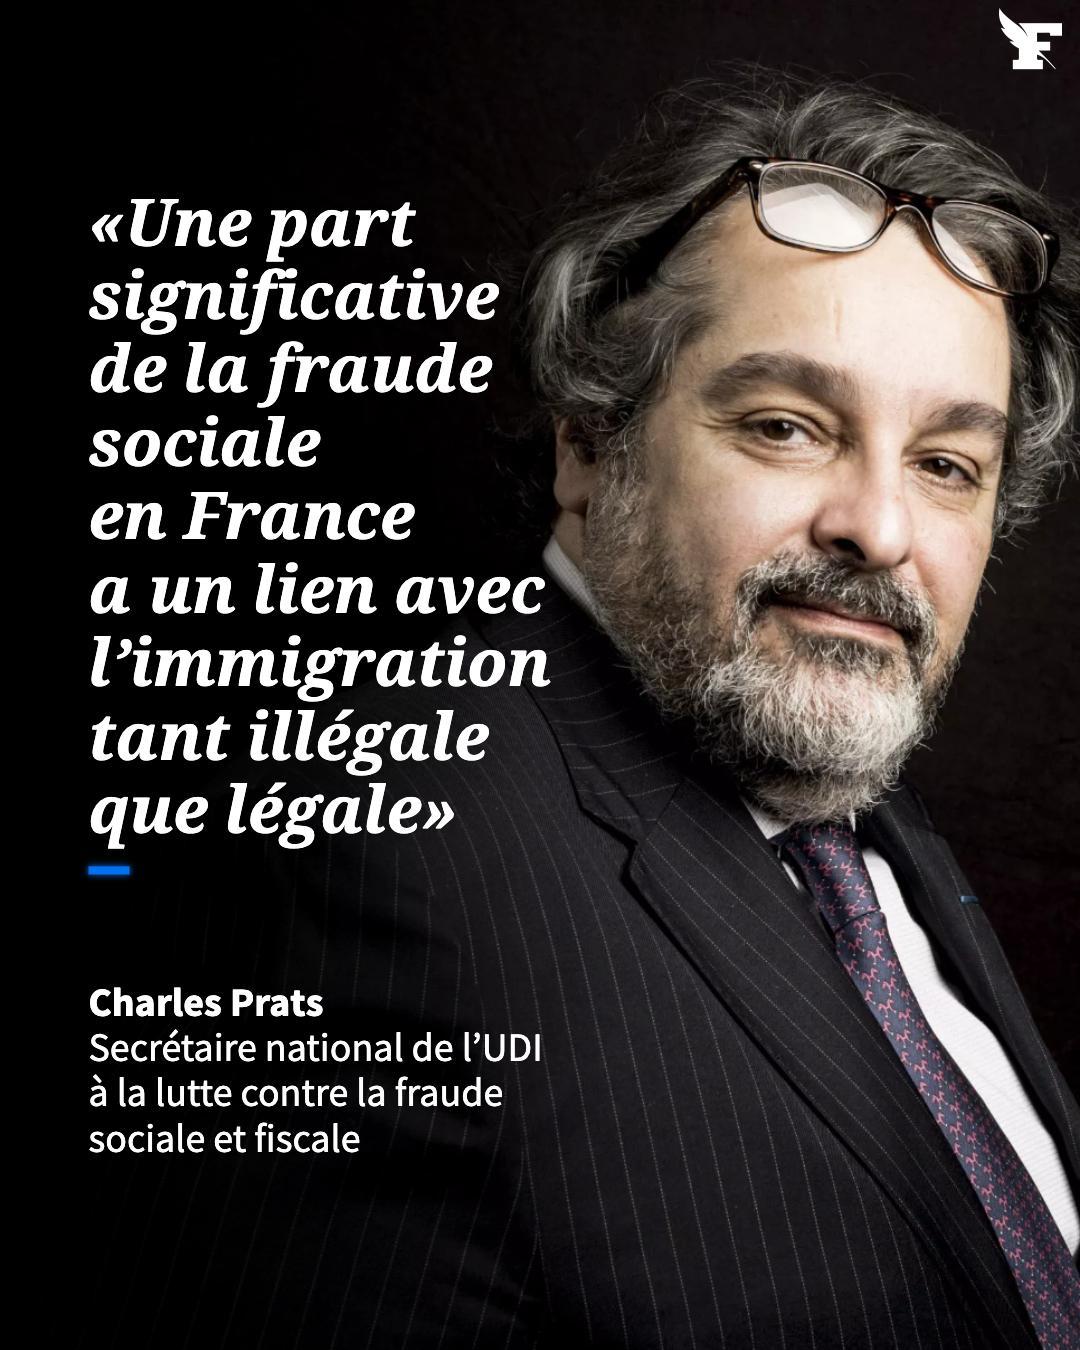 Le Figaro on X: "L'ancien magistrat de la Délégation nationale à la lutte  contre la fraude Charles Prats explique pourquoi les abus, dans le domaine  de l'immigration, sont une des causes majeures